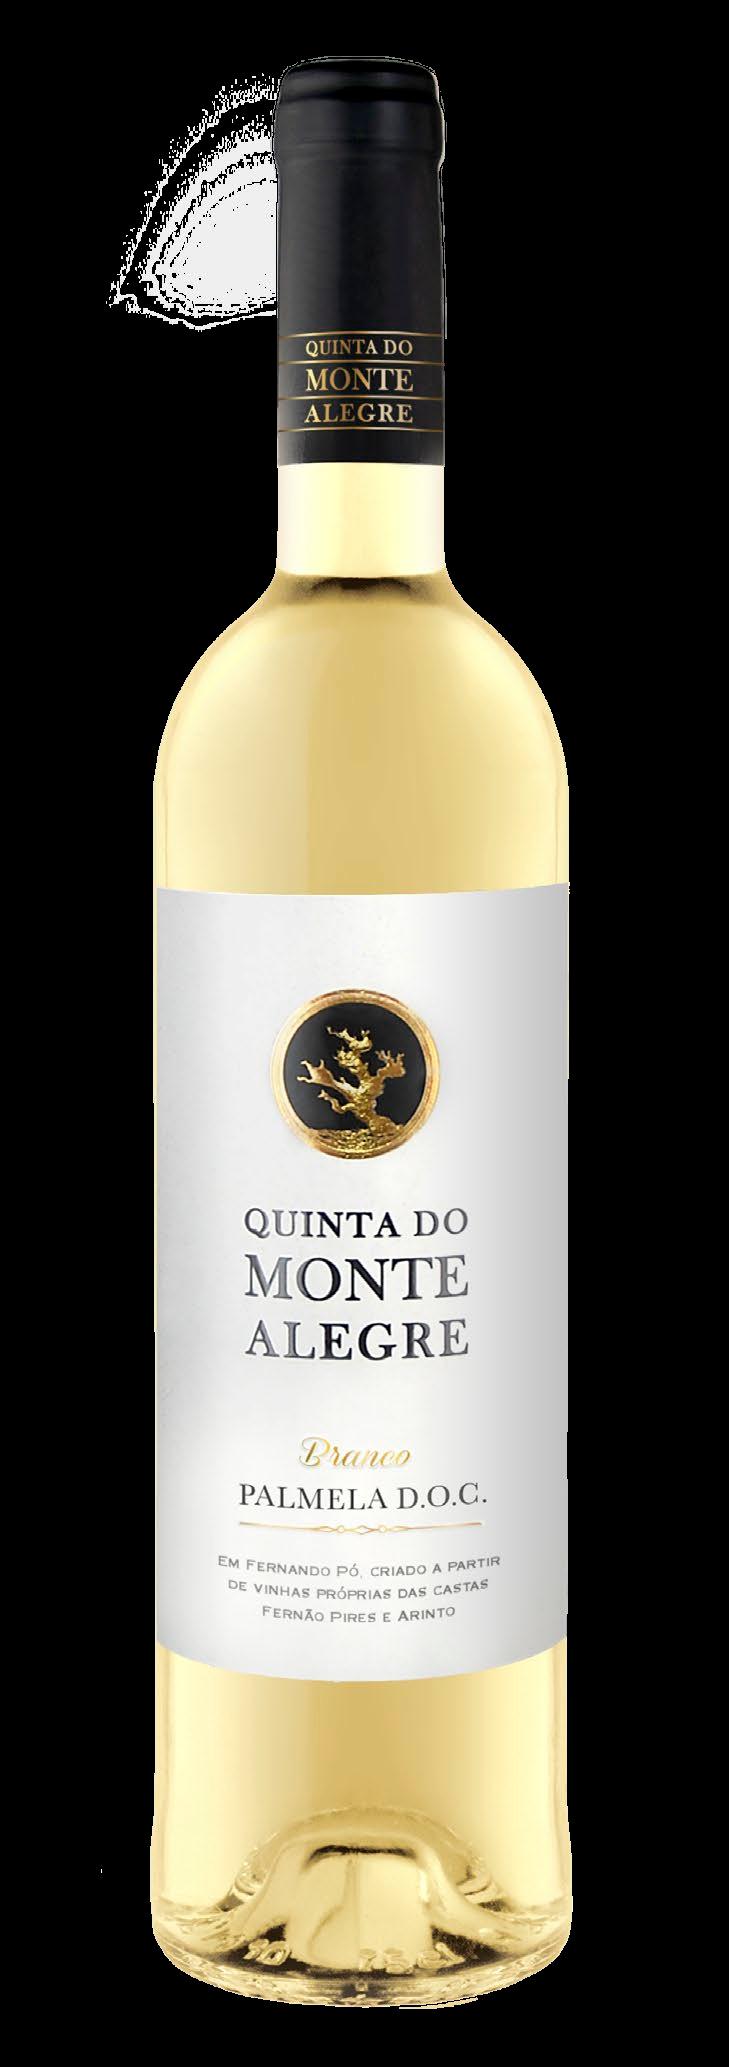 Vinho branco produzido na Quinta do Monte Alegre, em Fernando Pó, de acordo com a certificação de origem PALMELA D.O.C.